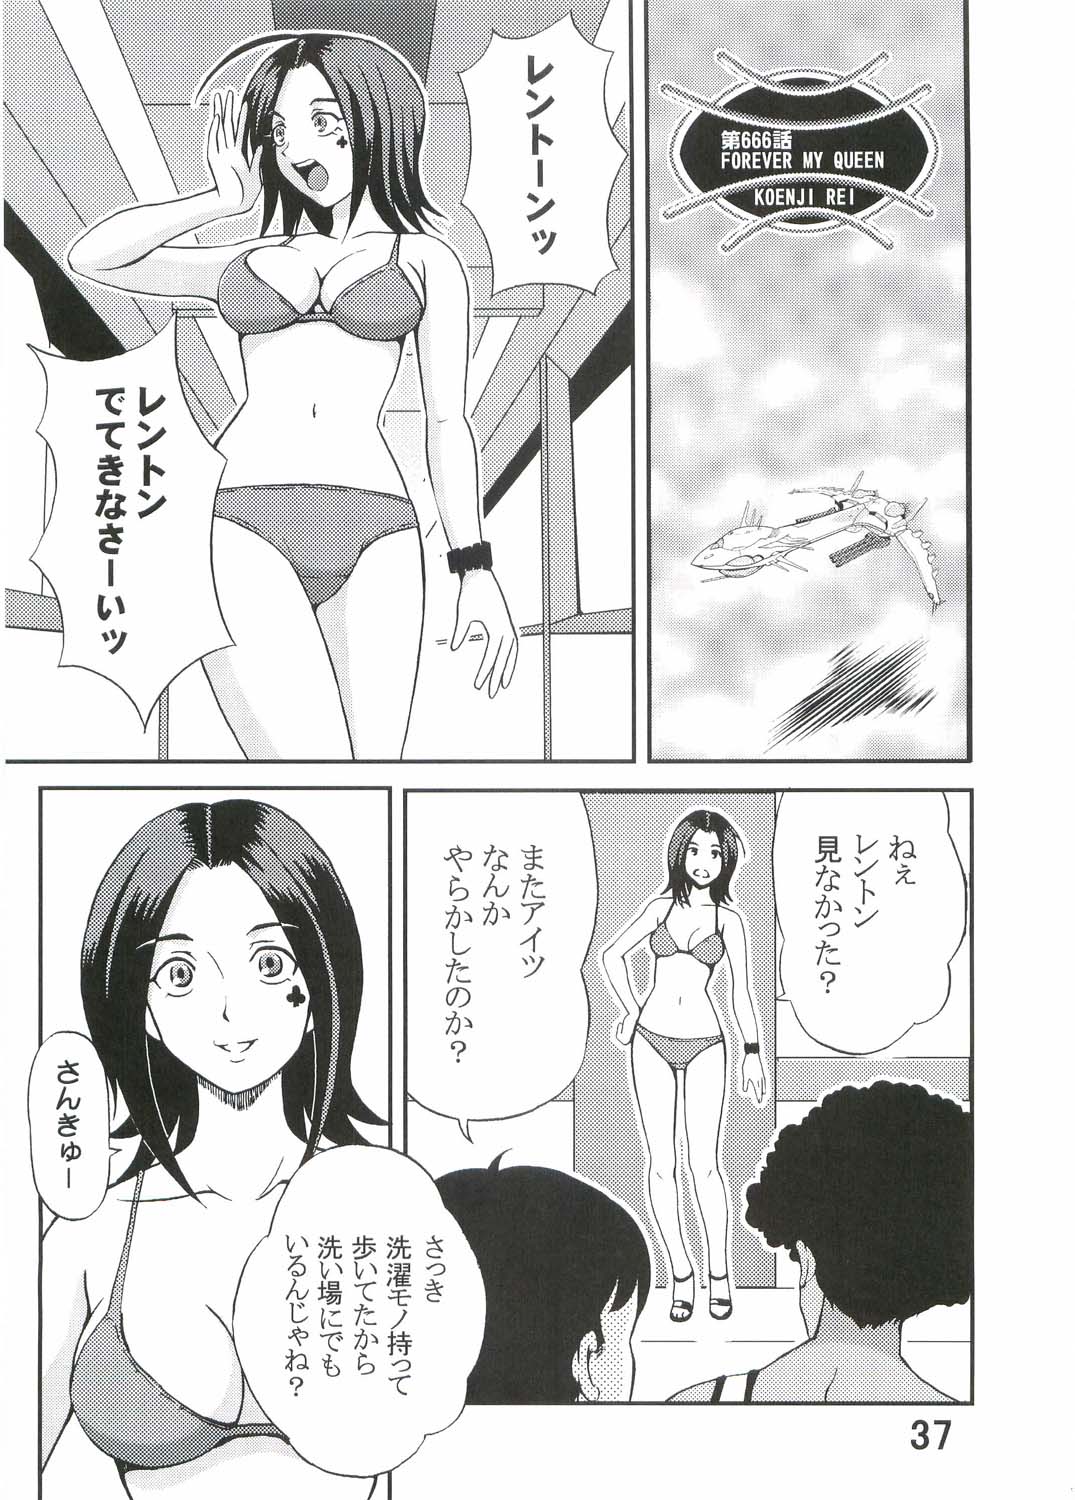 [St. Rio (Kitty, Kouenji Rei)] Ura ray-out (Eureka seveN) page 38 full